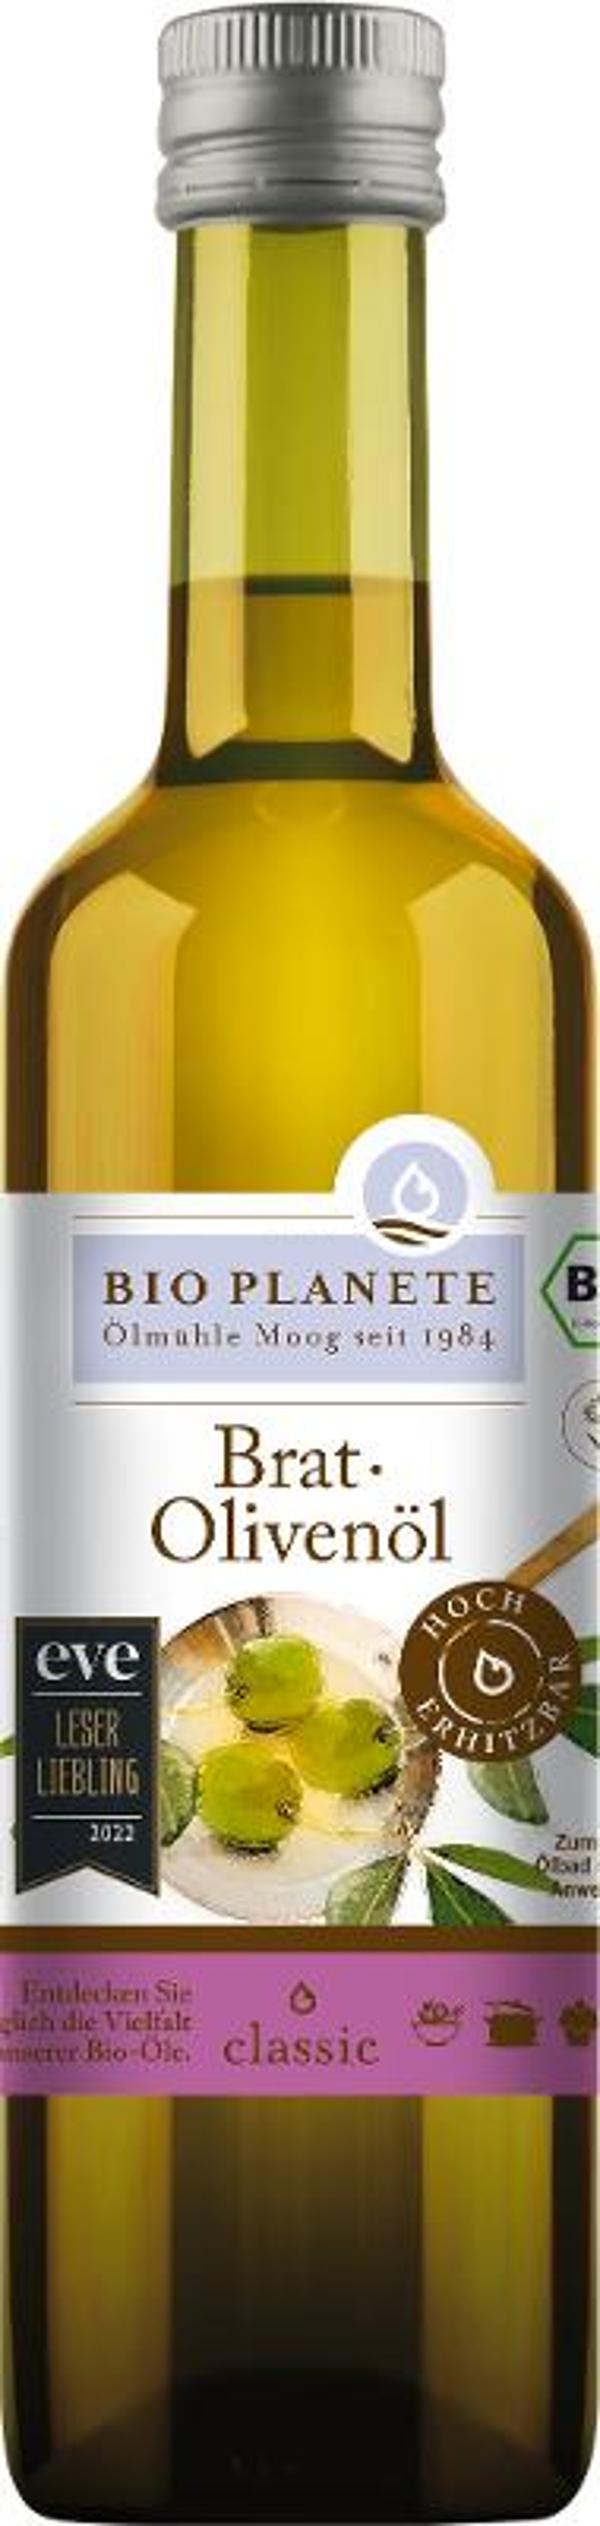 Produktfoto zu Brat Olivenöl 0,5